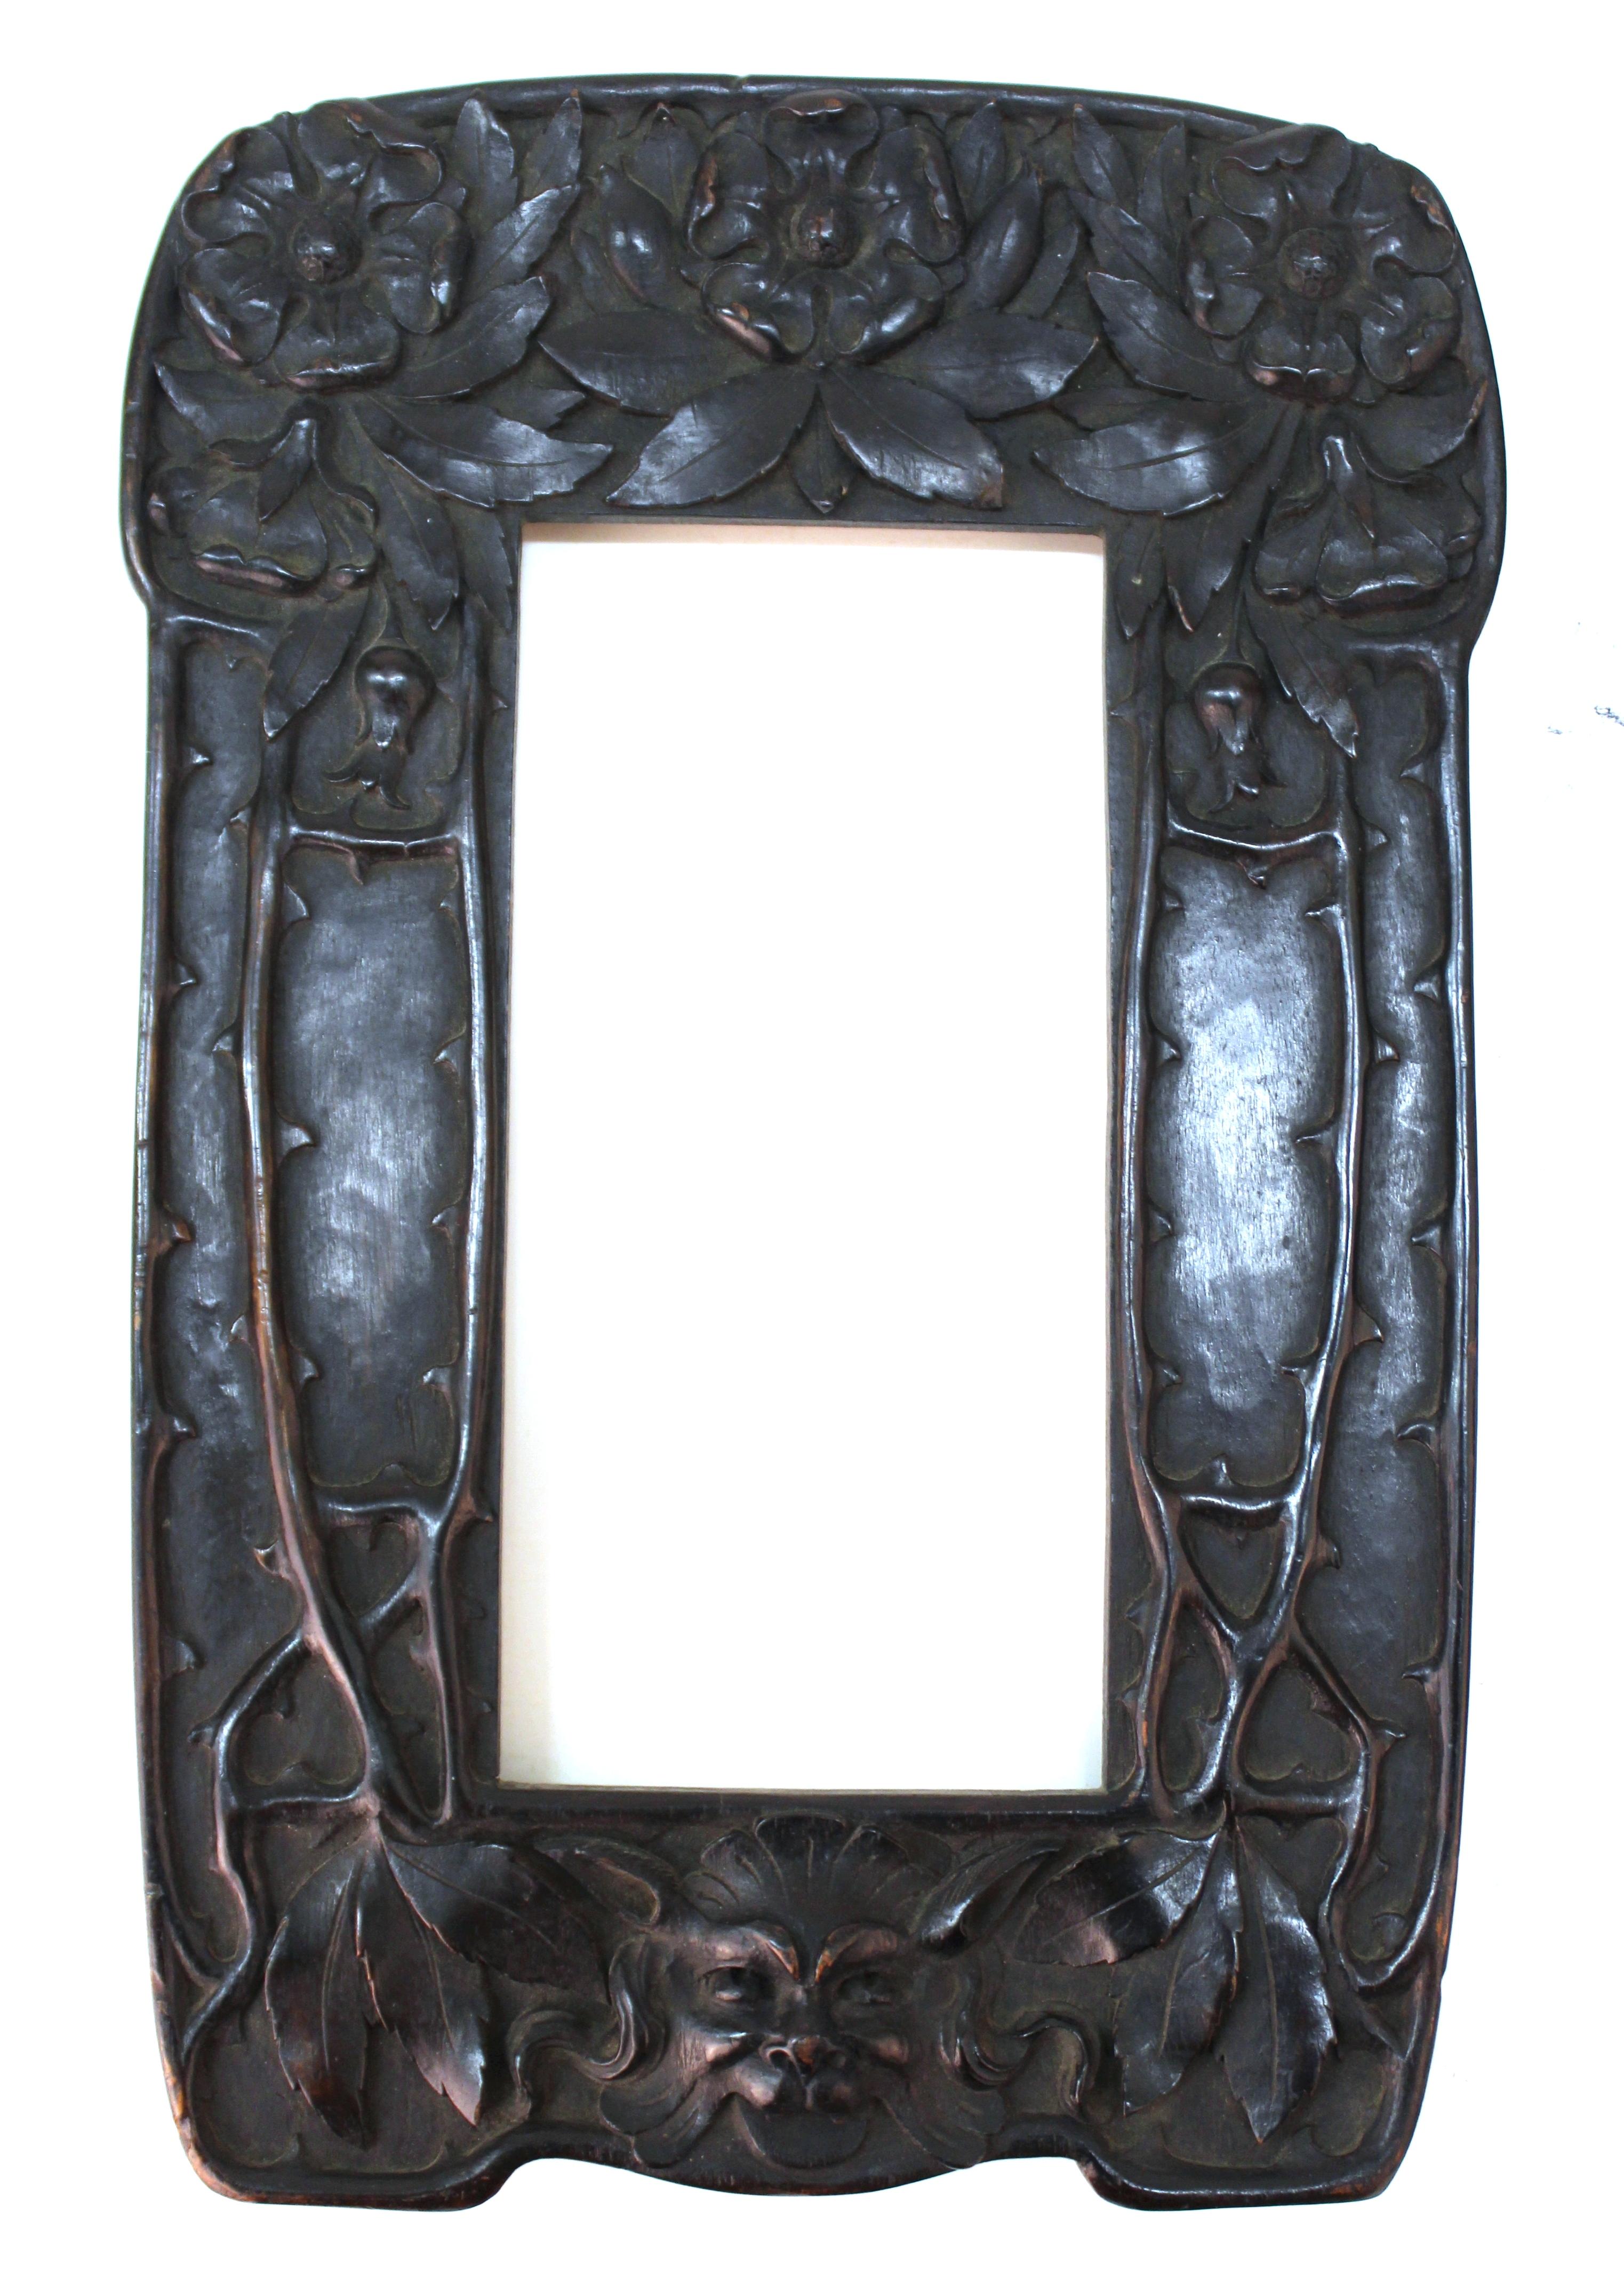 Miroir italien Art Nouveau avec un cadre en bois sculpté, créé par Cutler & Girard en Italie. Le cadre est orné de roses sculptées sur la partie supérieure, d'épines sur les côtés et de la tête d'un grotesque sur la partie inférieure. La pièce porte